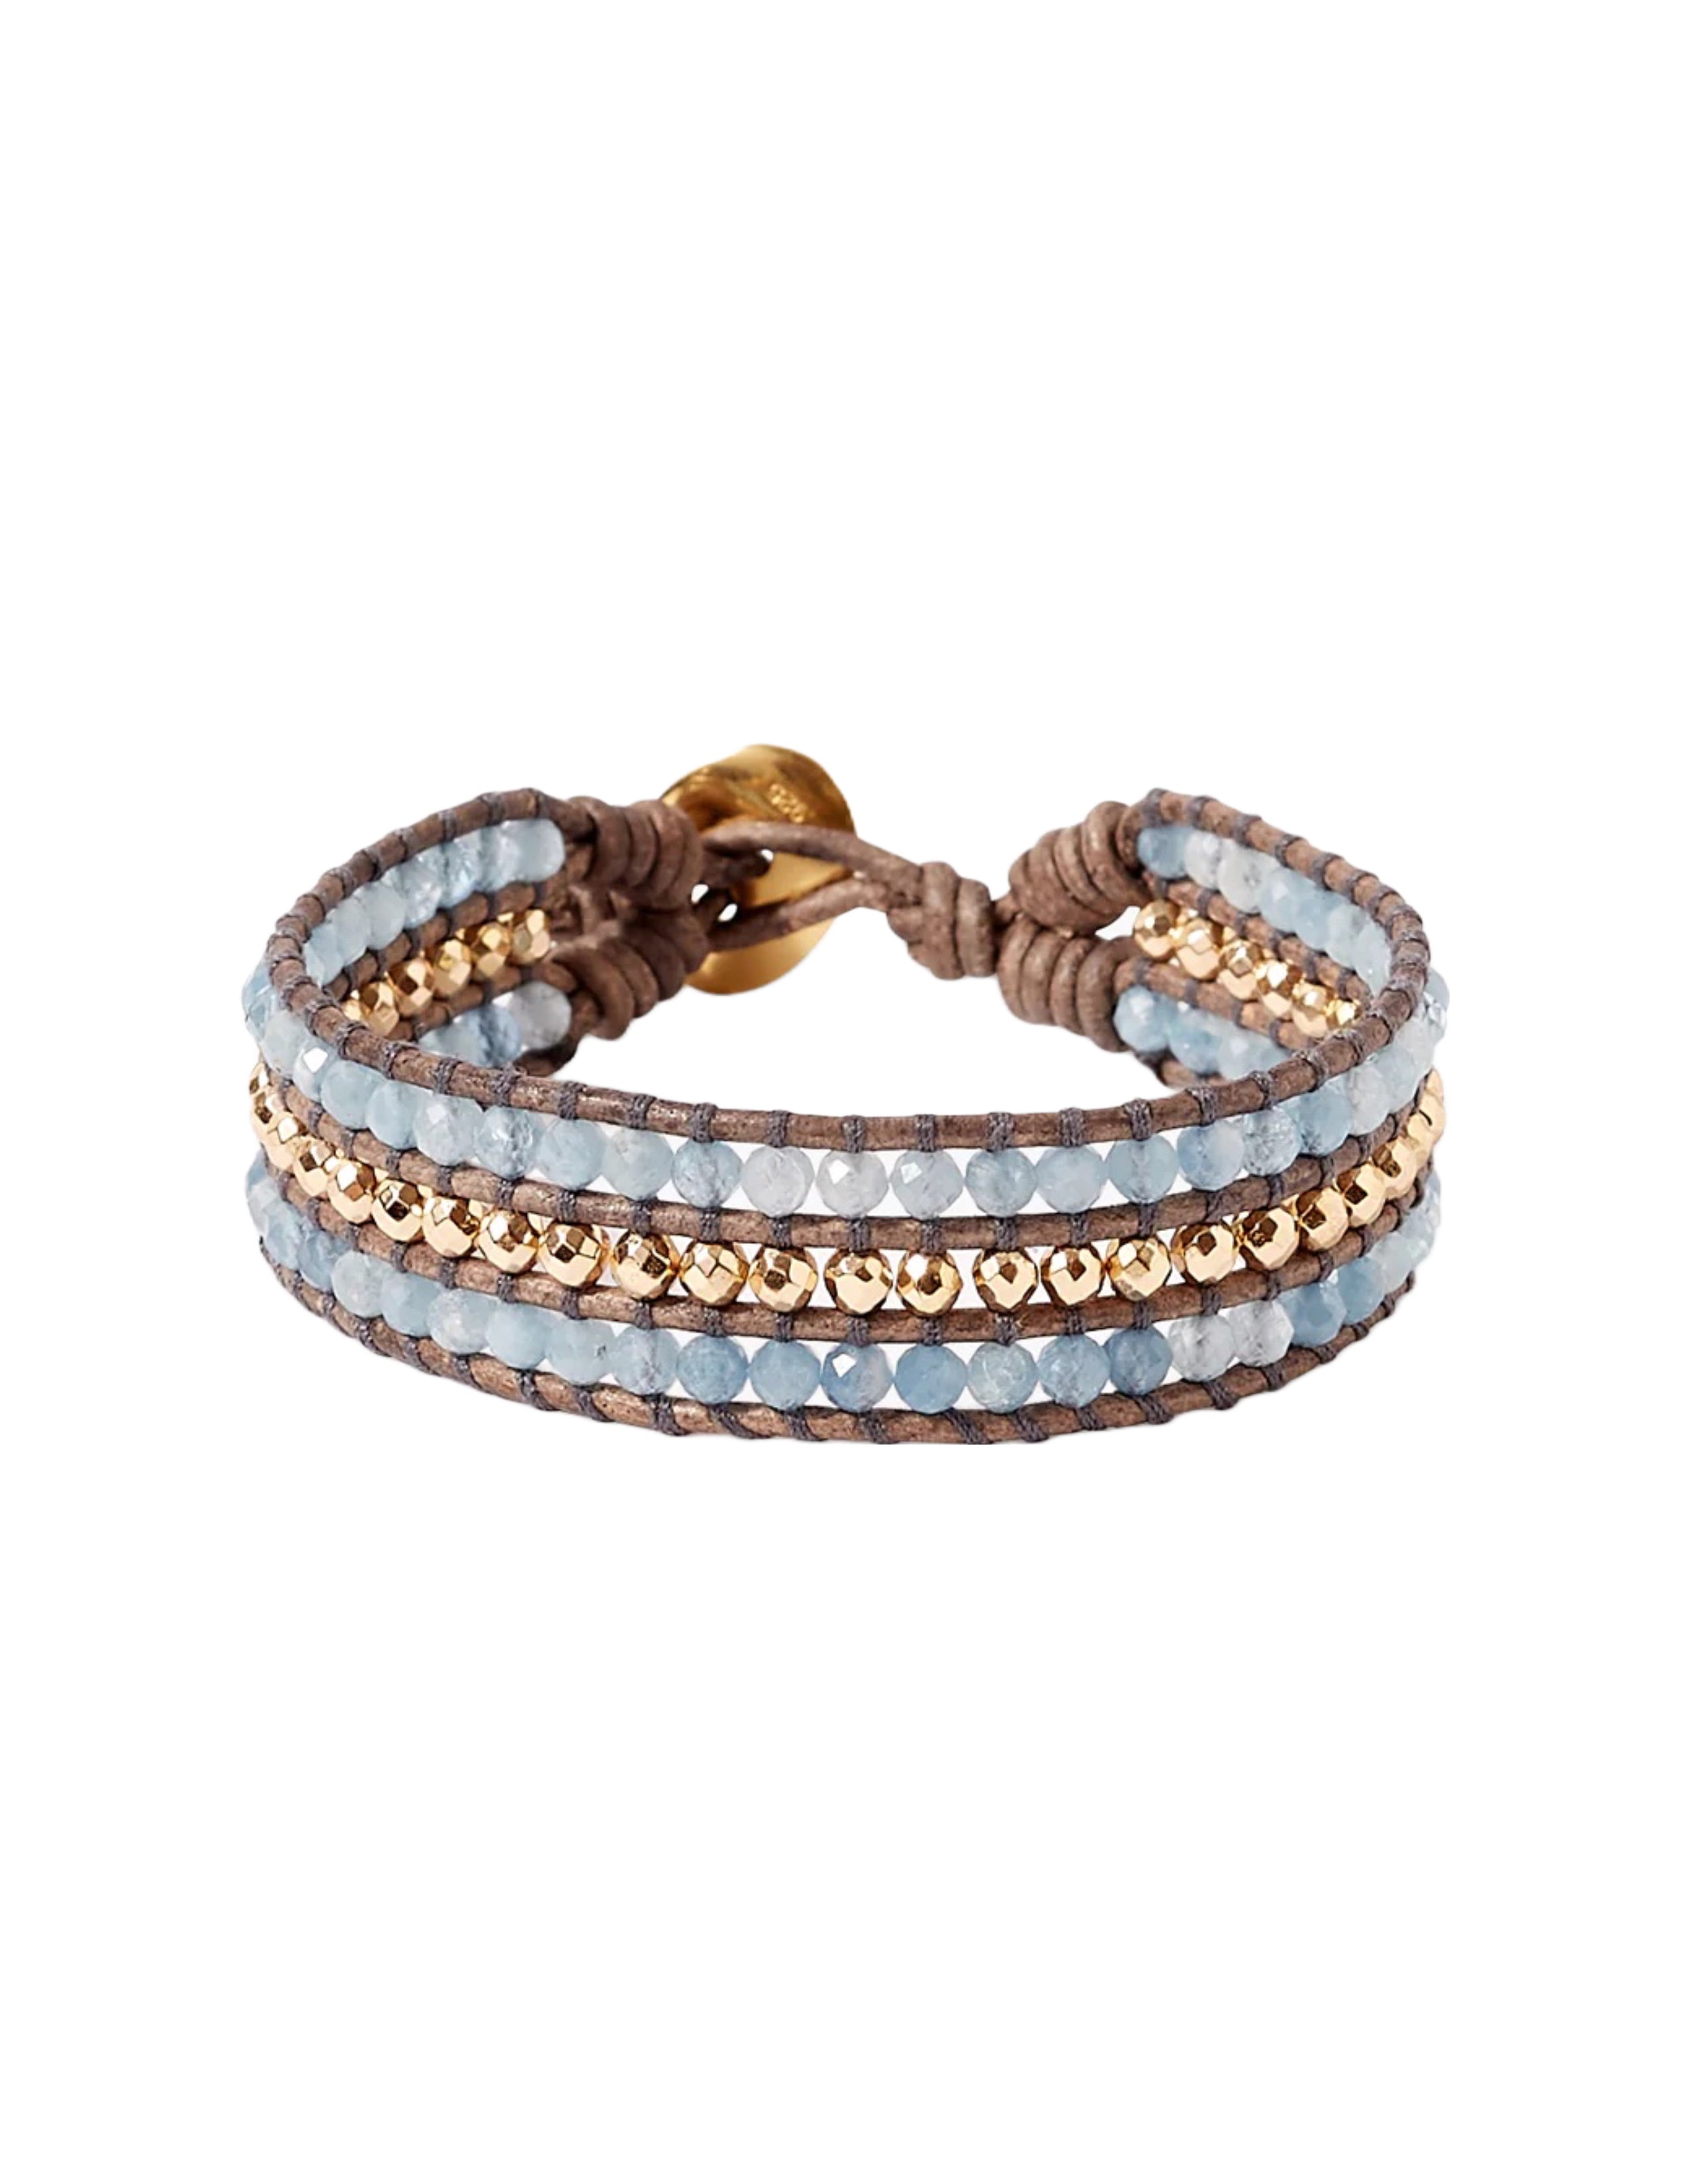 Sedona Single Wrap Bracelet - Aquamarine